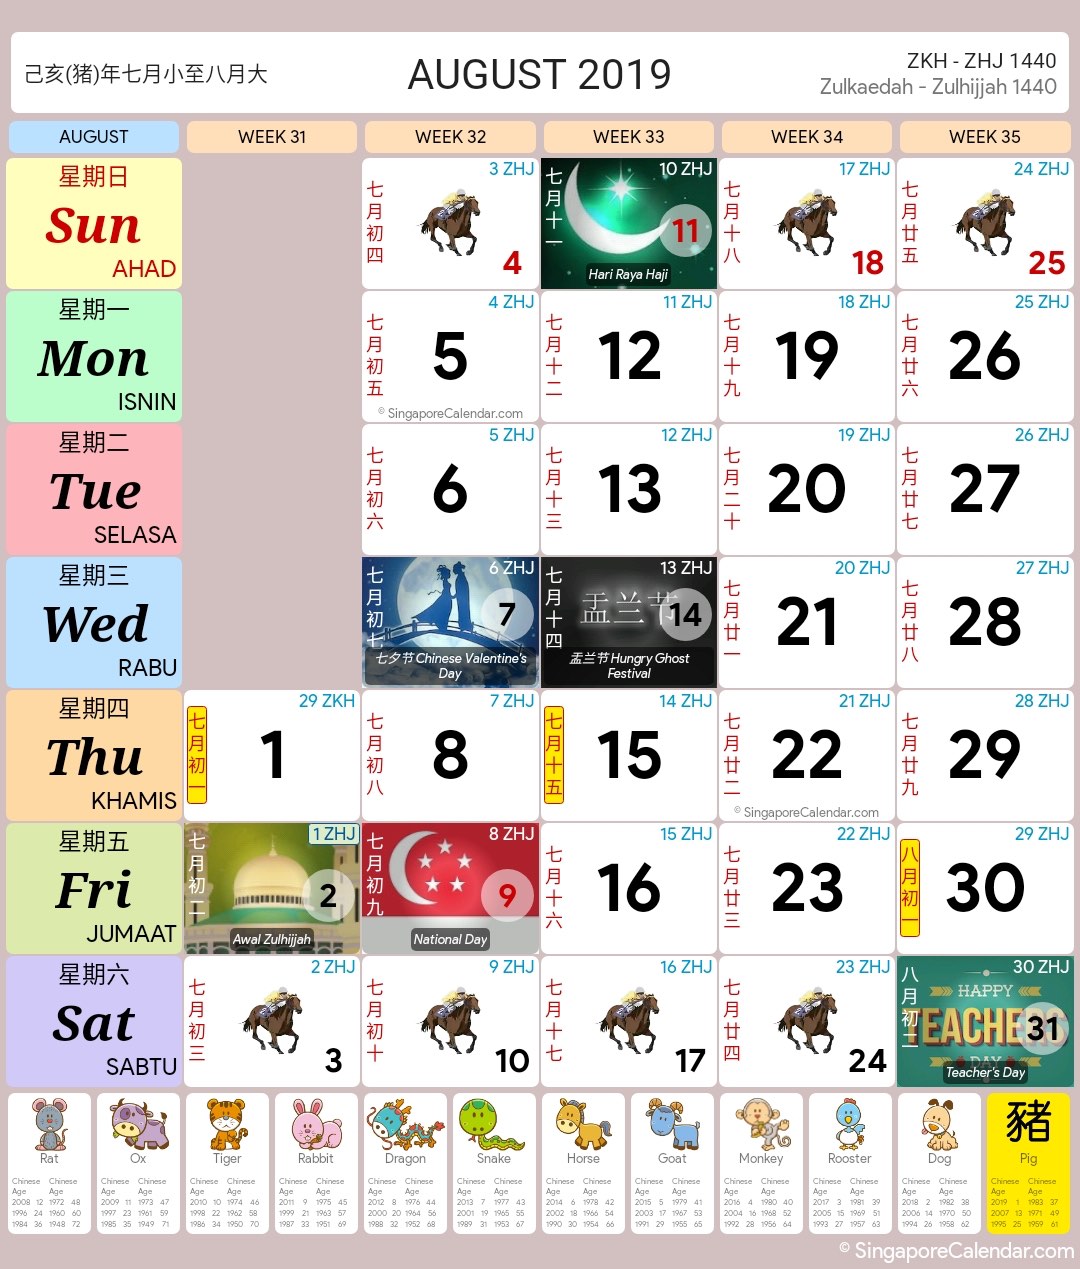 Singapore Calendar Year 2019 - Singapore Calendar1080 x 1269